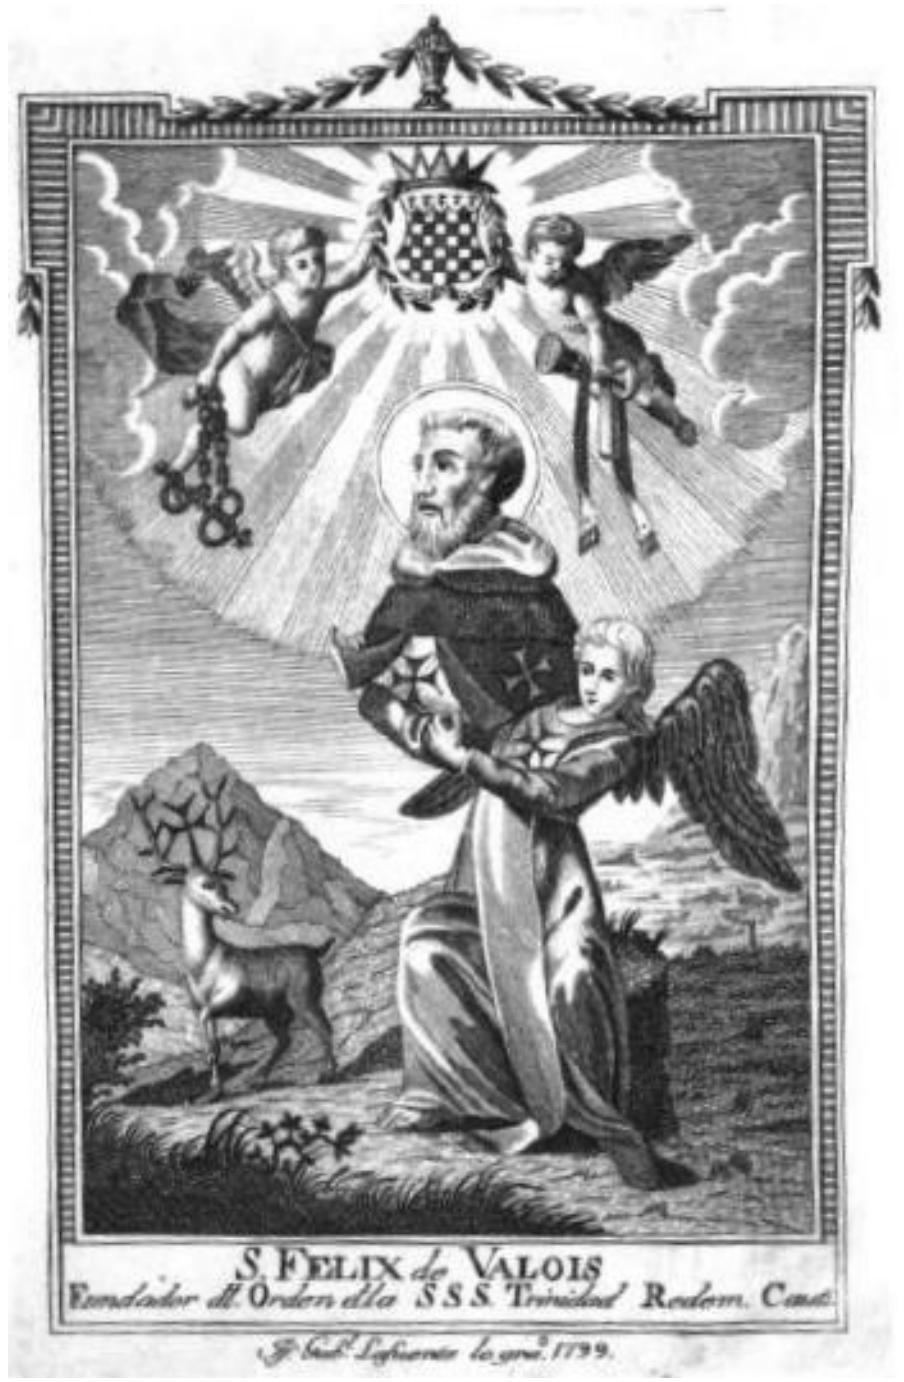 Sväty Félix z Vaolis